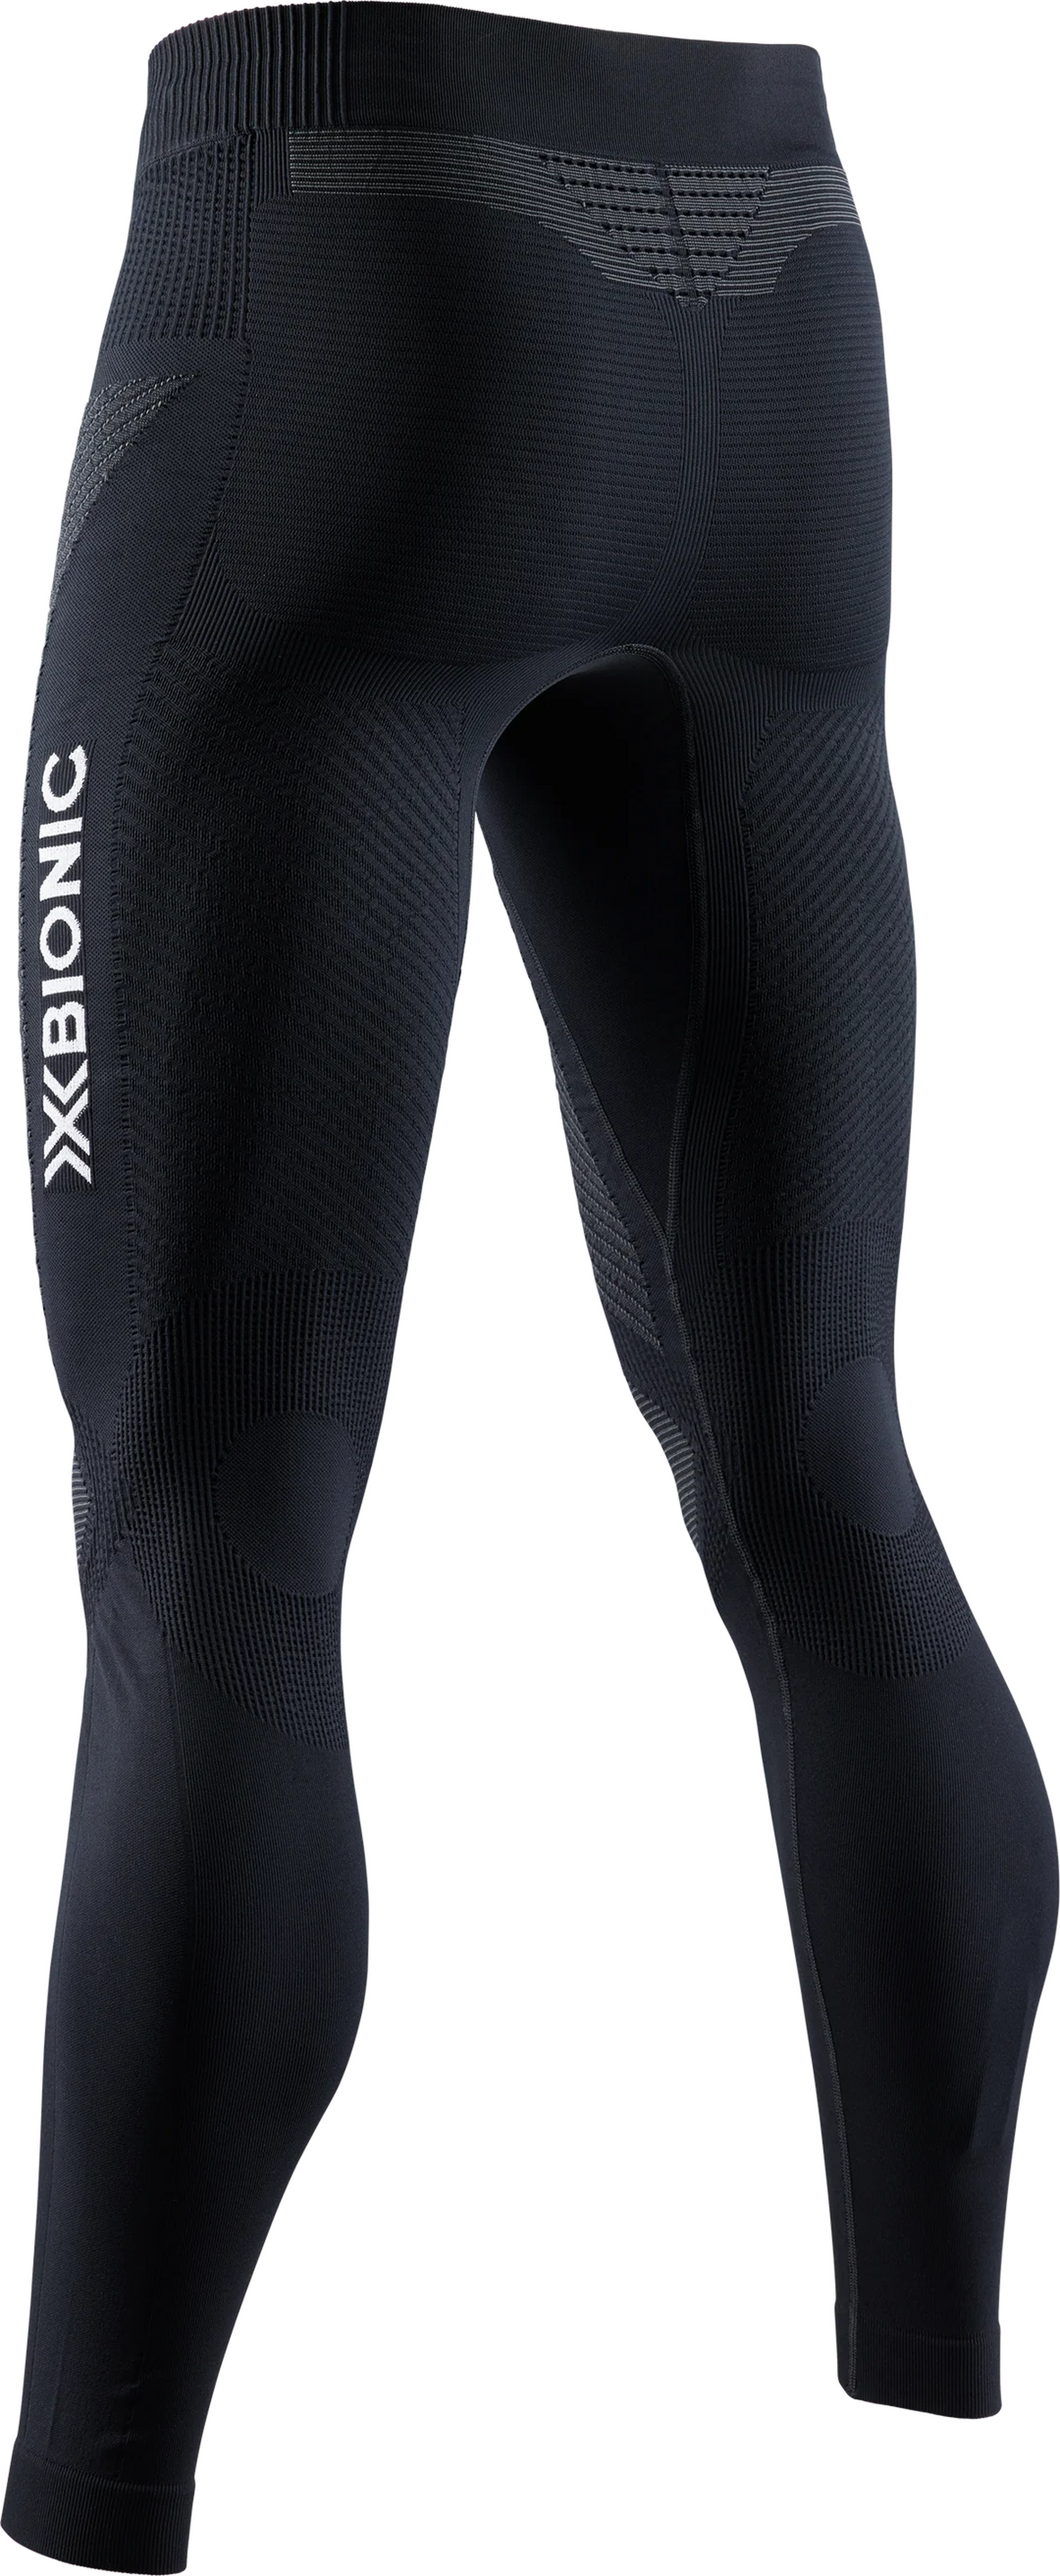 X-Bionic Invent 4.0 Running Pants Herren